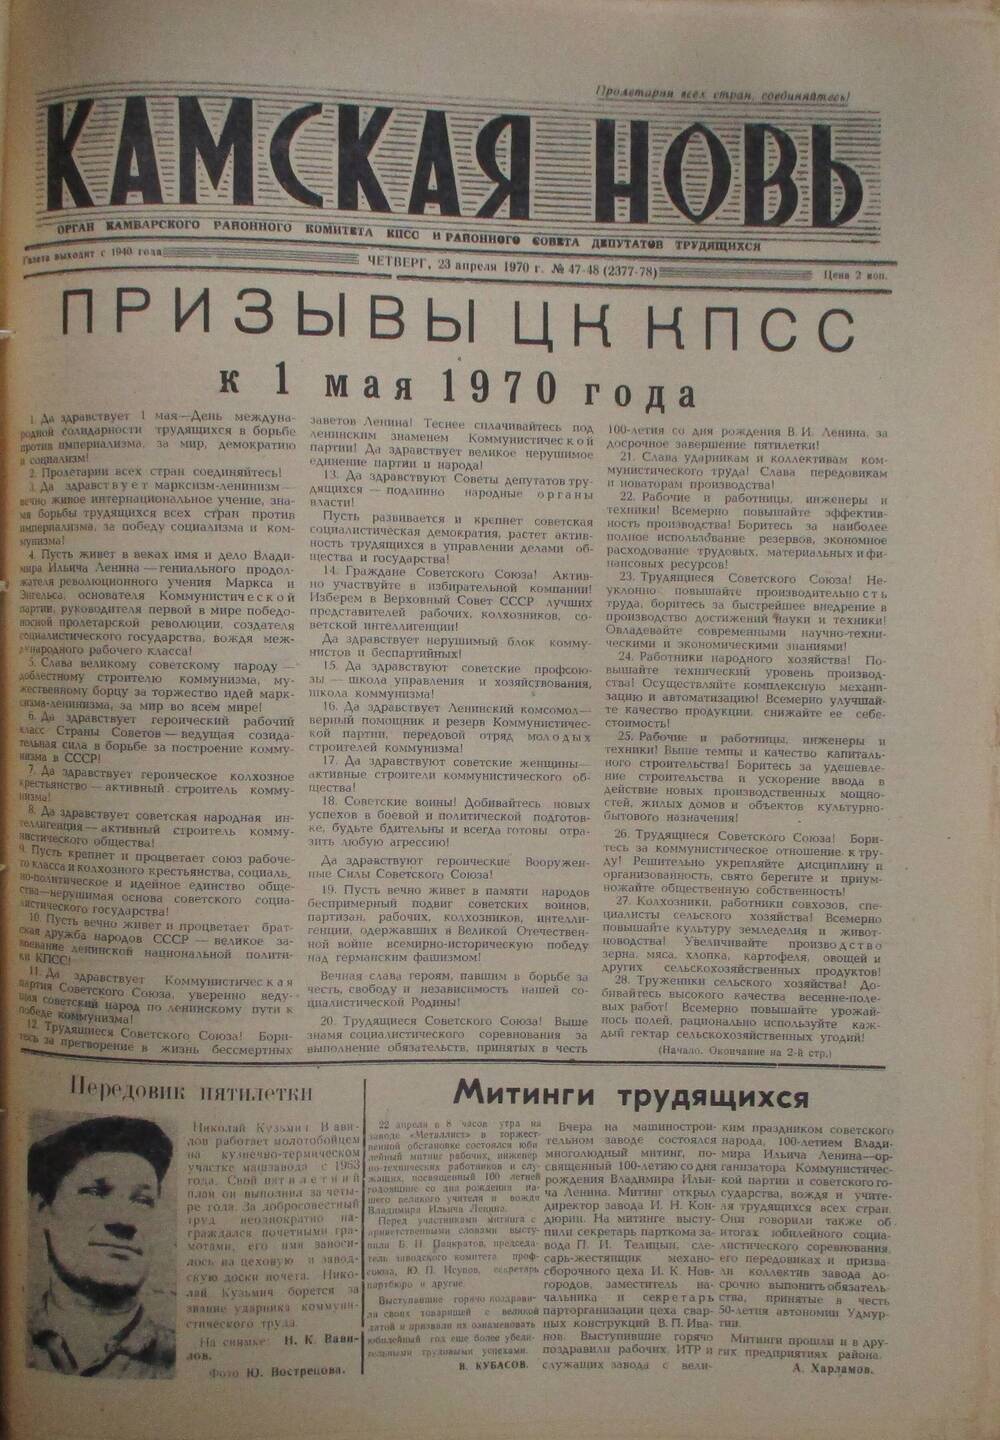 Газеты Камская новь за 1970 год. с №1 по №83., №48-49.